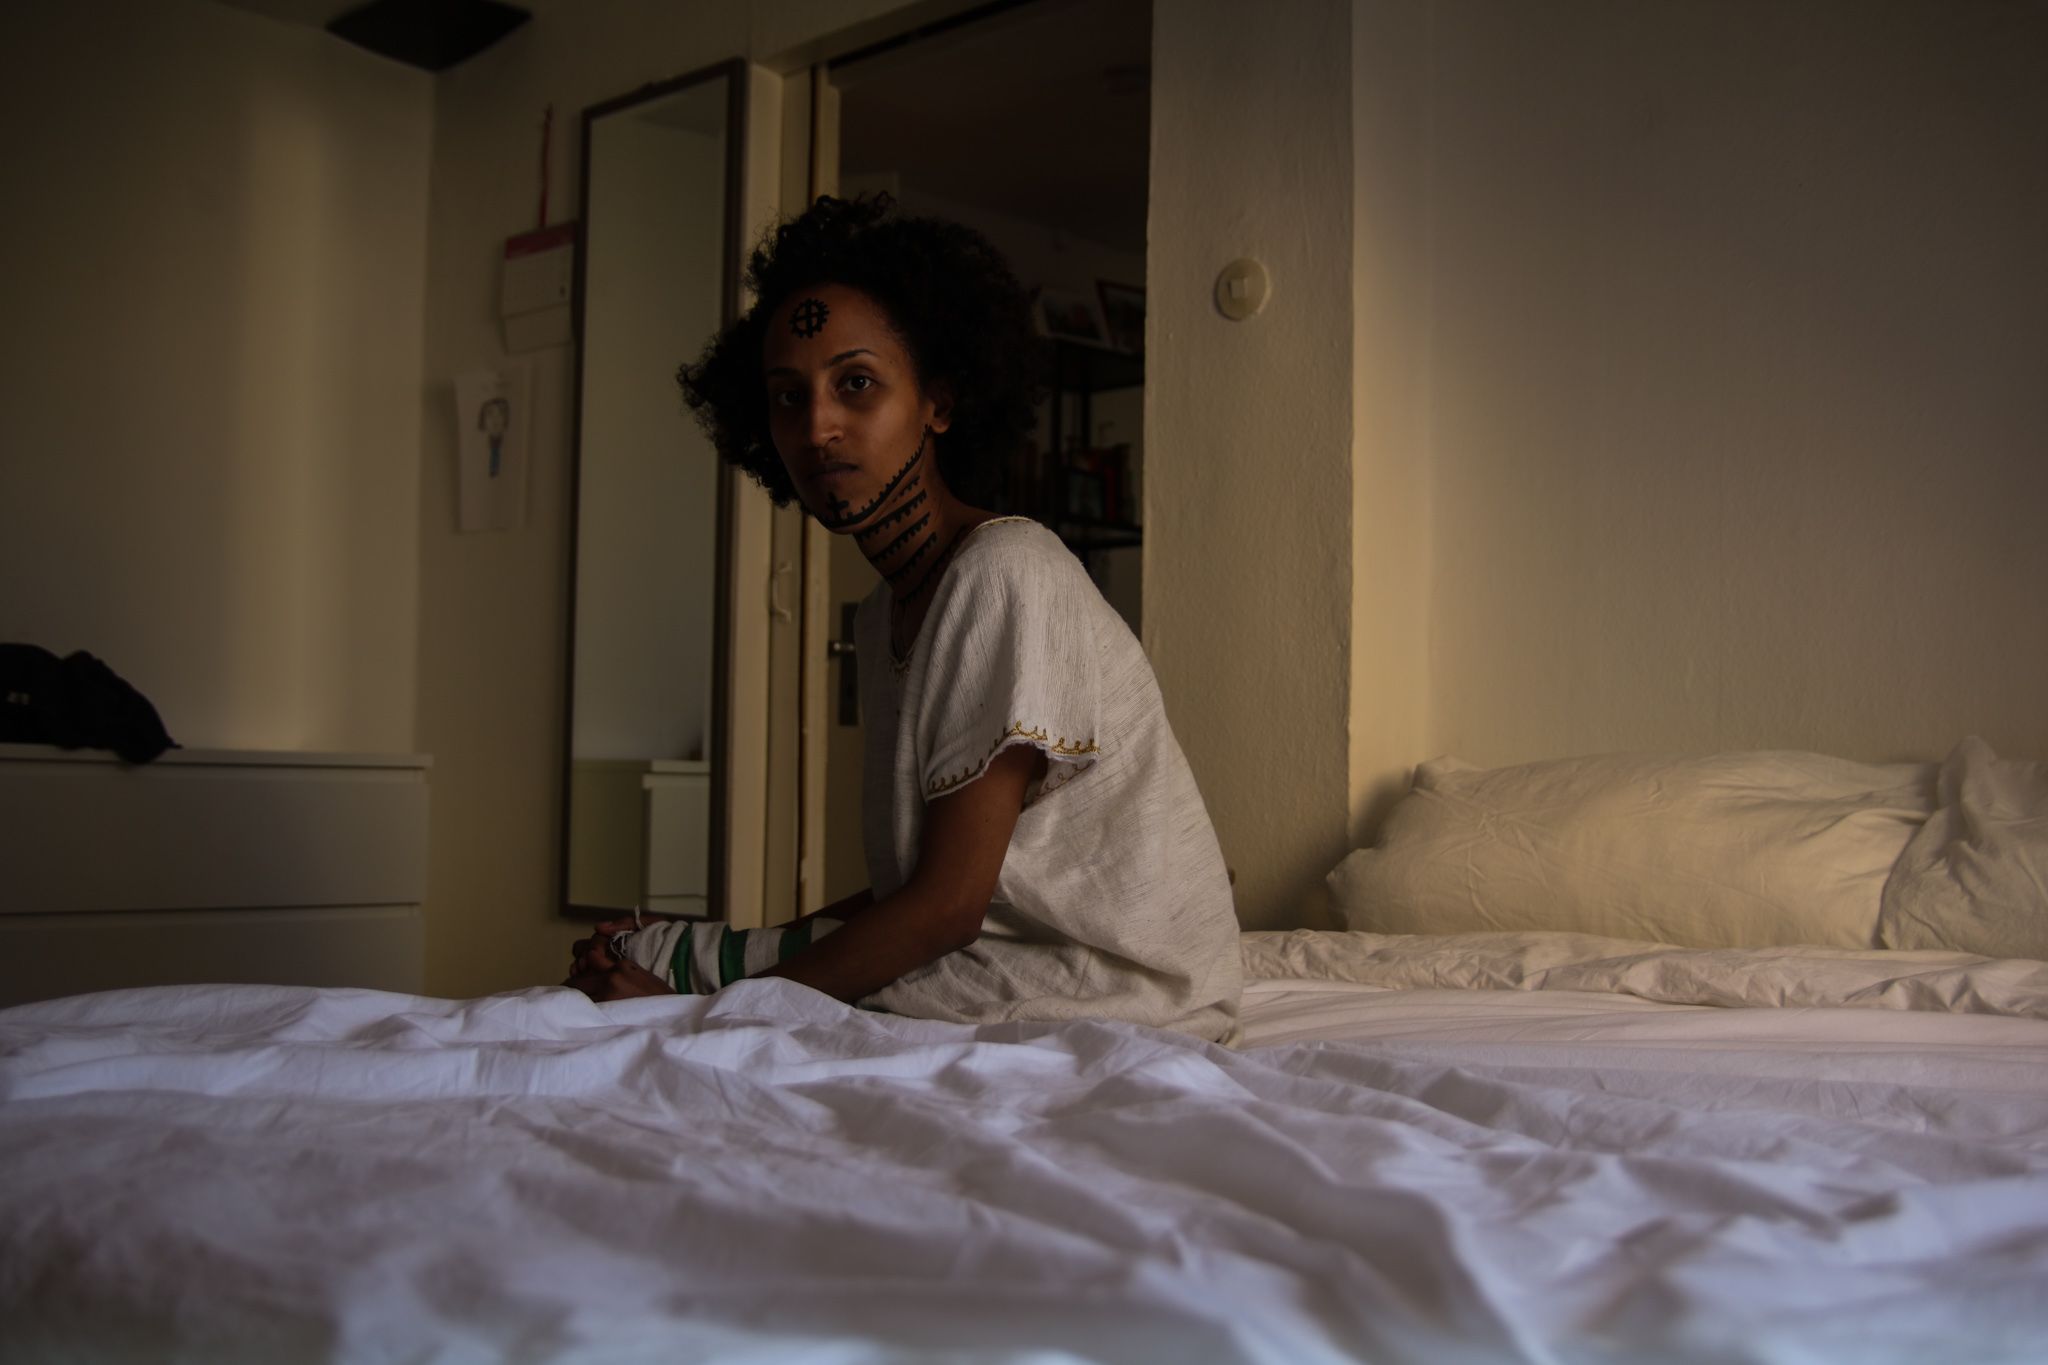 zu sehen. Ihr Kopf ist nach links hinter sich gedreht. Sie blickt direkt in die Kamera. Ihr Hals und ihre Stirn sind mit traditionellen äthiopischen Tätowierungen bemalt.